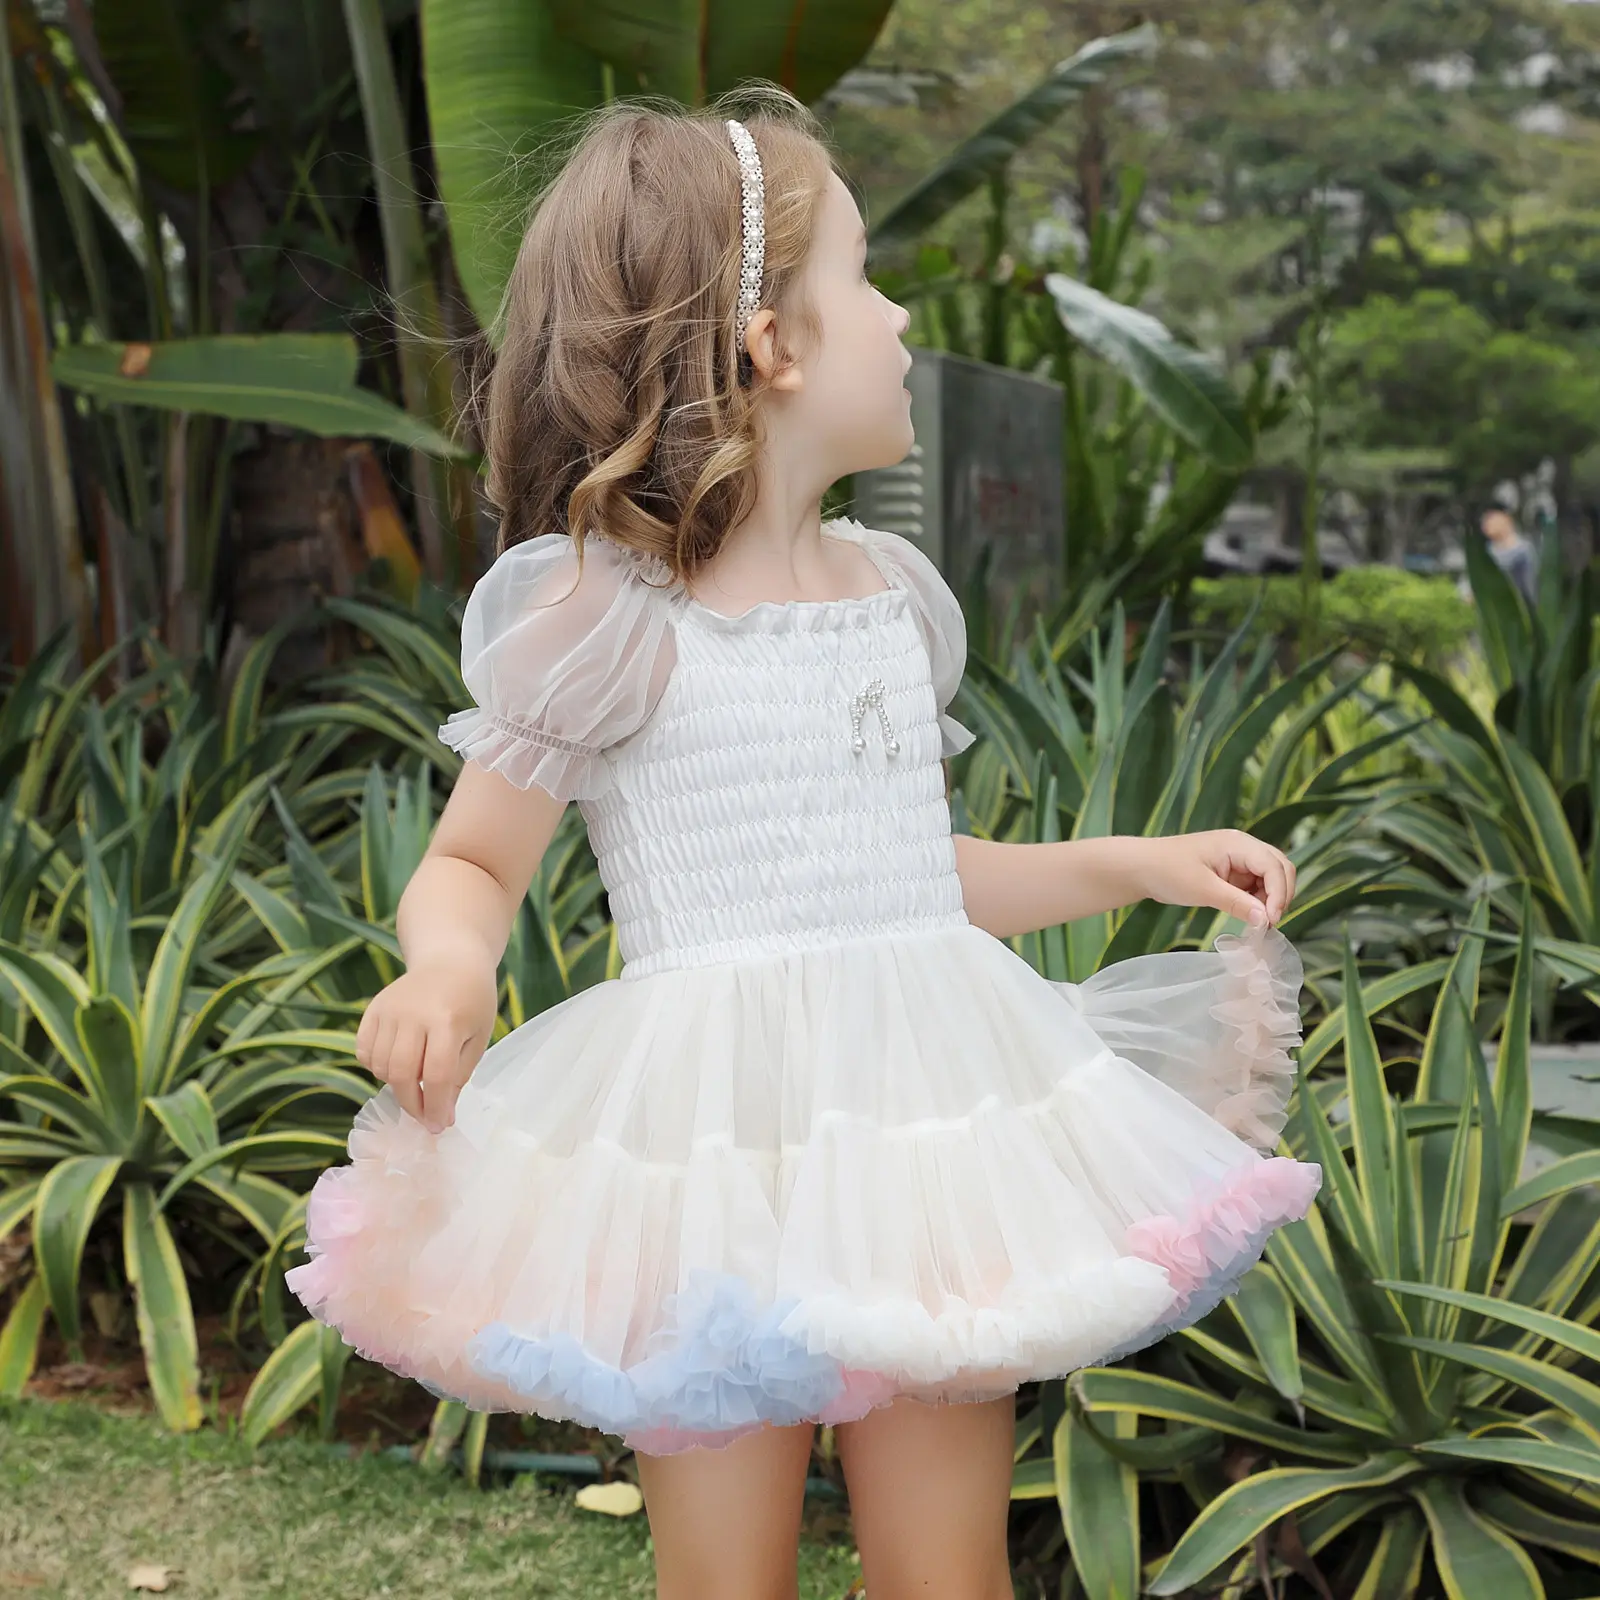 नई शैली फैशन प्यारा डॉट चौग़ा बच्चों के कपड़े सेट कपड़े पतलून स्कर्ट वैकल्पिक कपड़े सेट